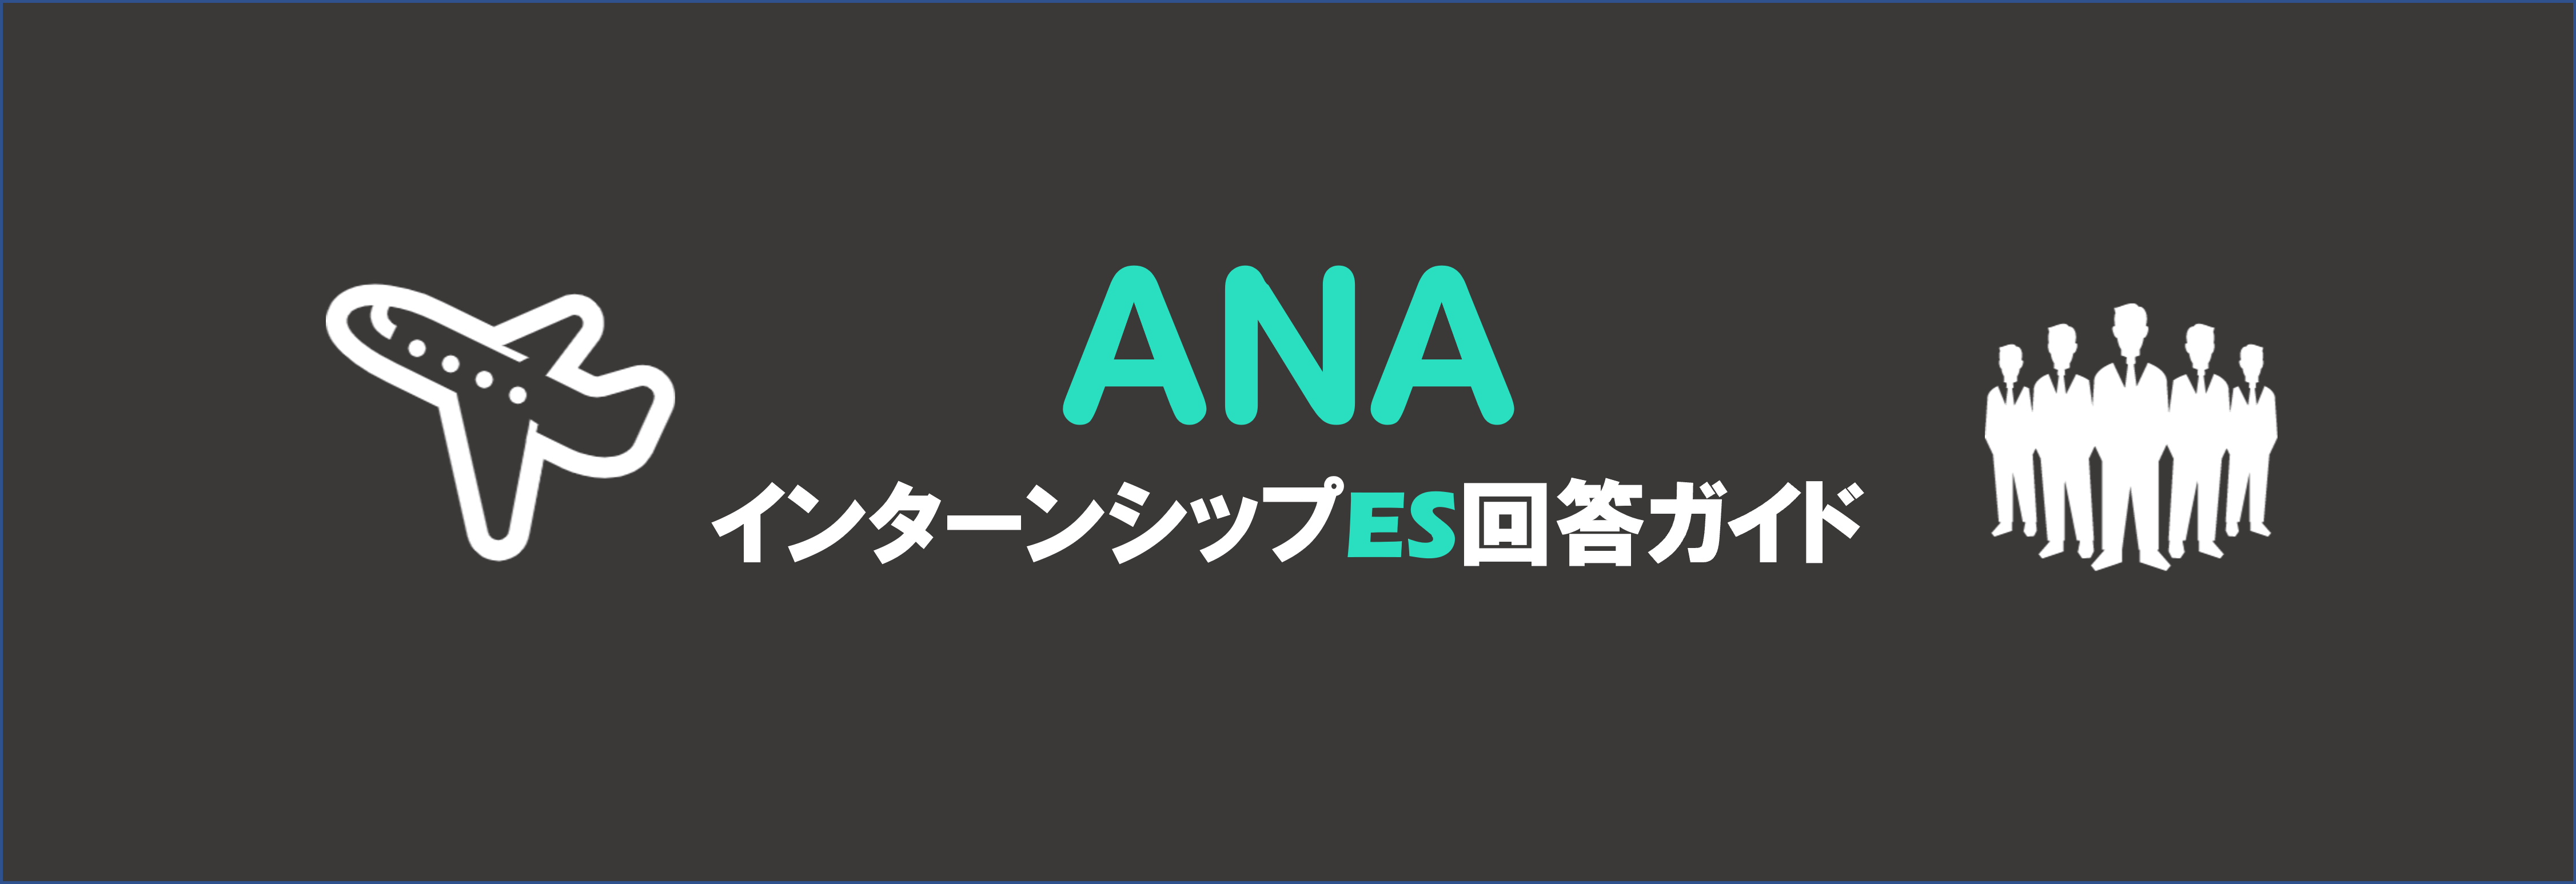 全日本空輸（ANA）のインターン内容とES選考突破方法